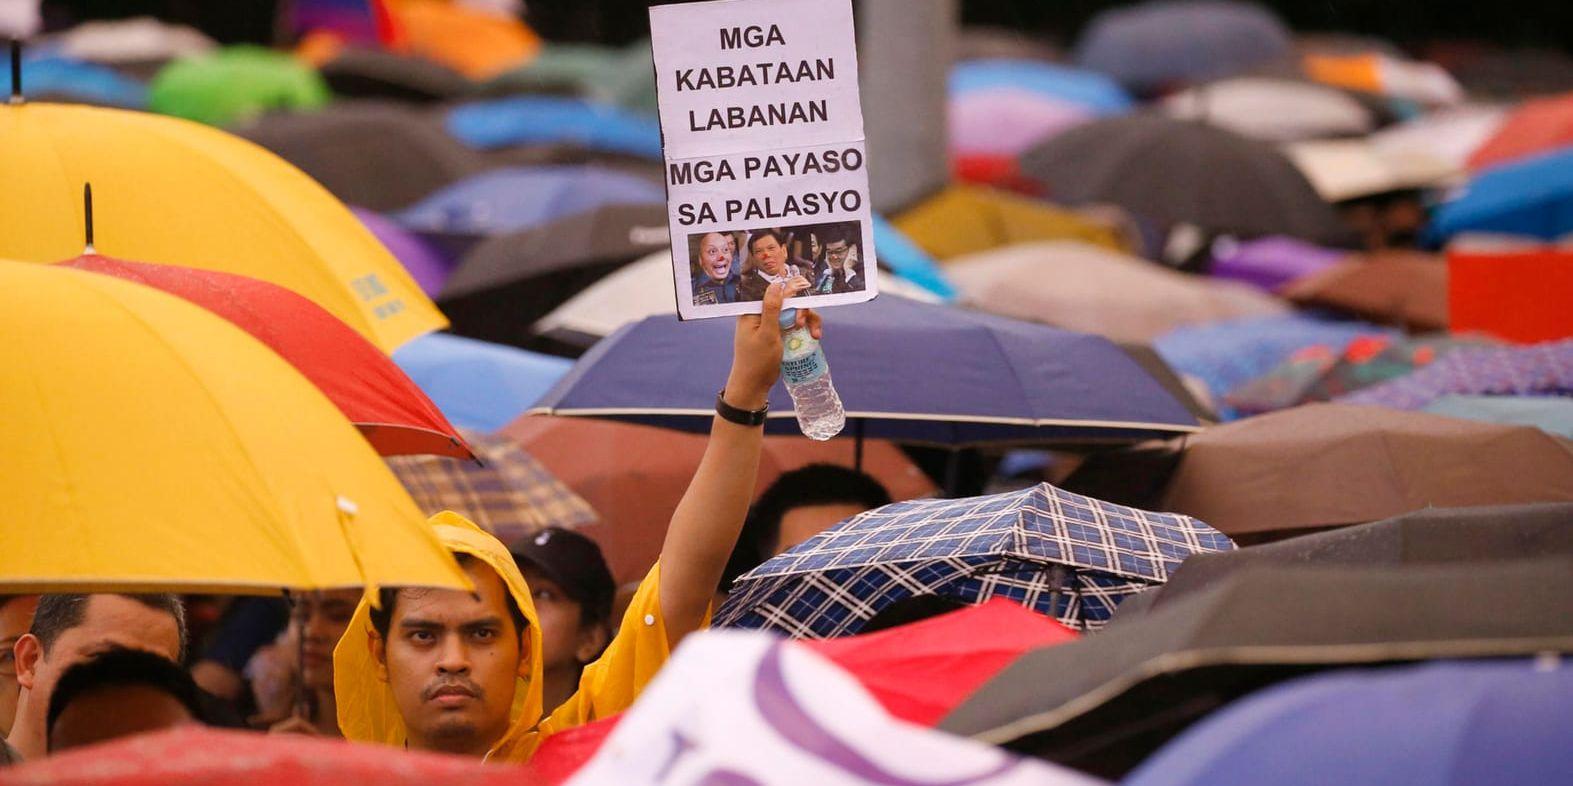 President Rodrigo Dutertes så kallade krig mot droger samlar fortfarande stort folkligt stöd i Filippinerna. Men missnöjet växer. I huvudstaden Manila trotsade hundratals demonstranter regnet i en protest mot dödandet och mot Duterte.